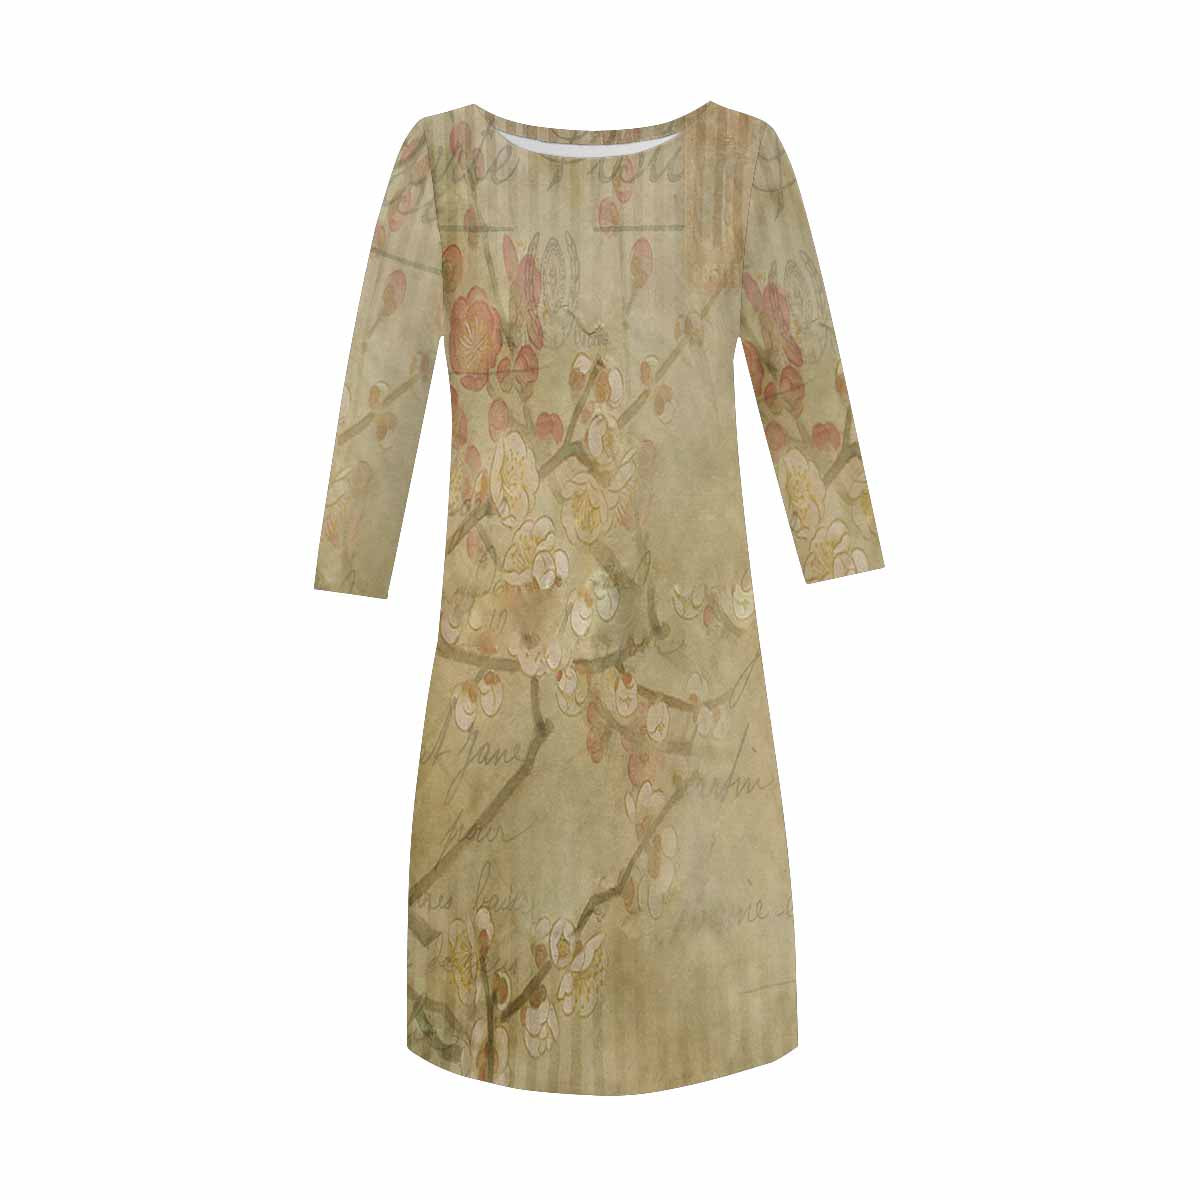 Antique General loose dress, MODEL 29532, design 25